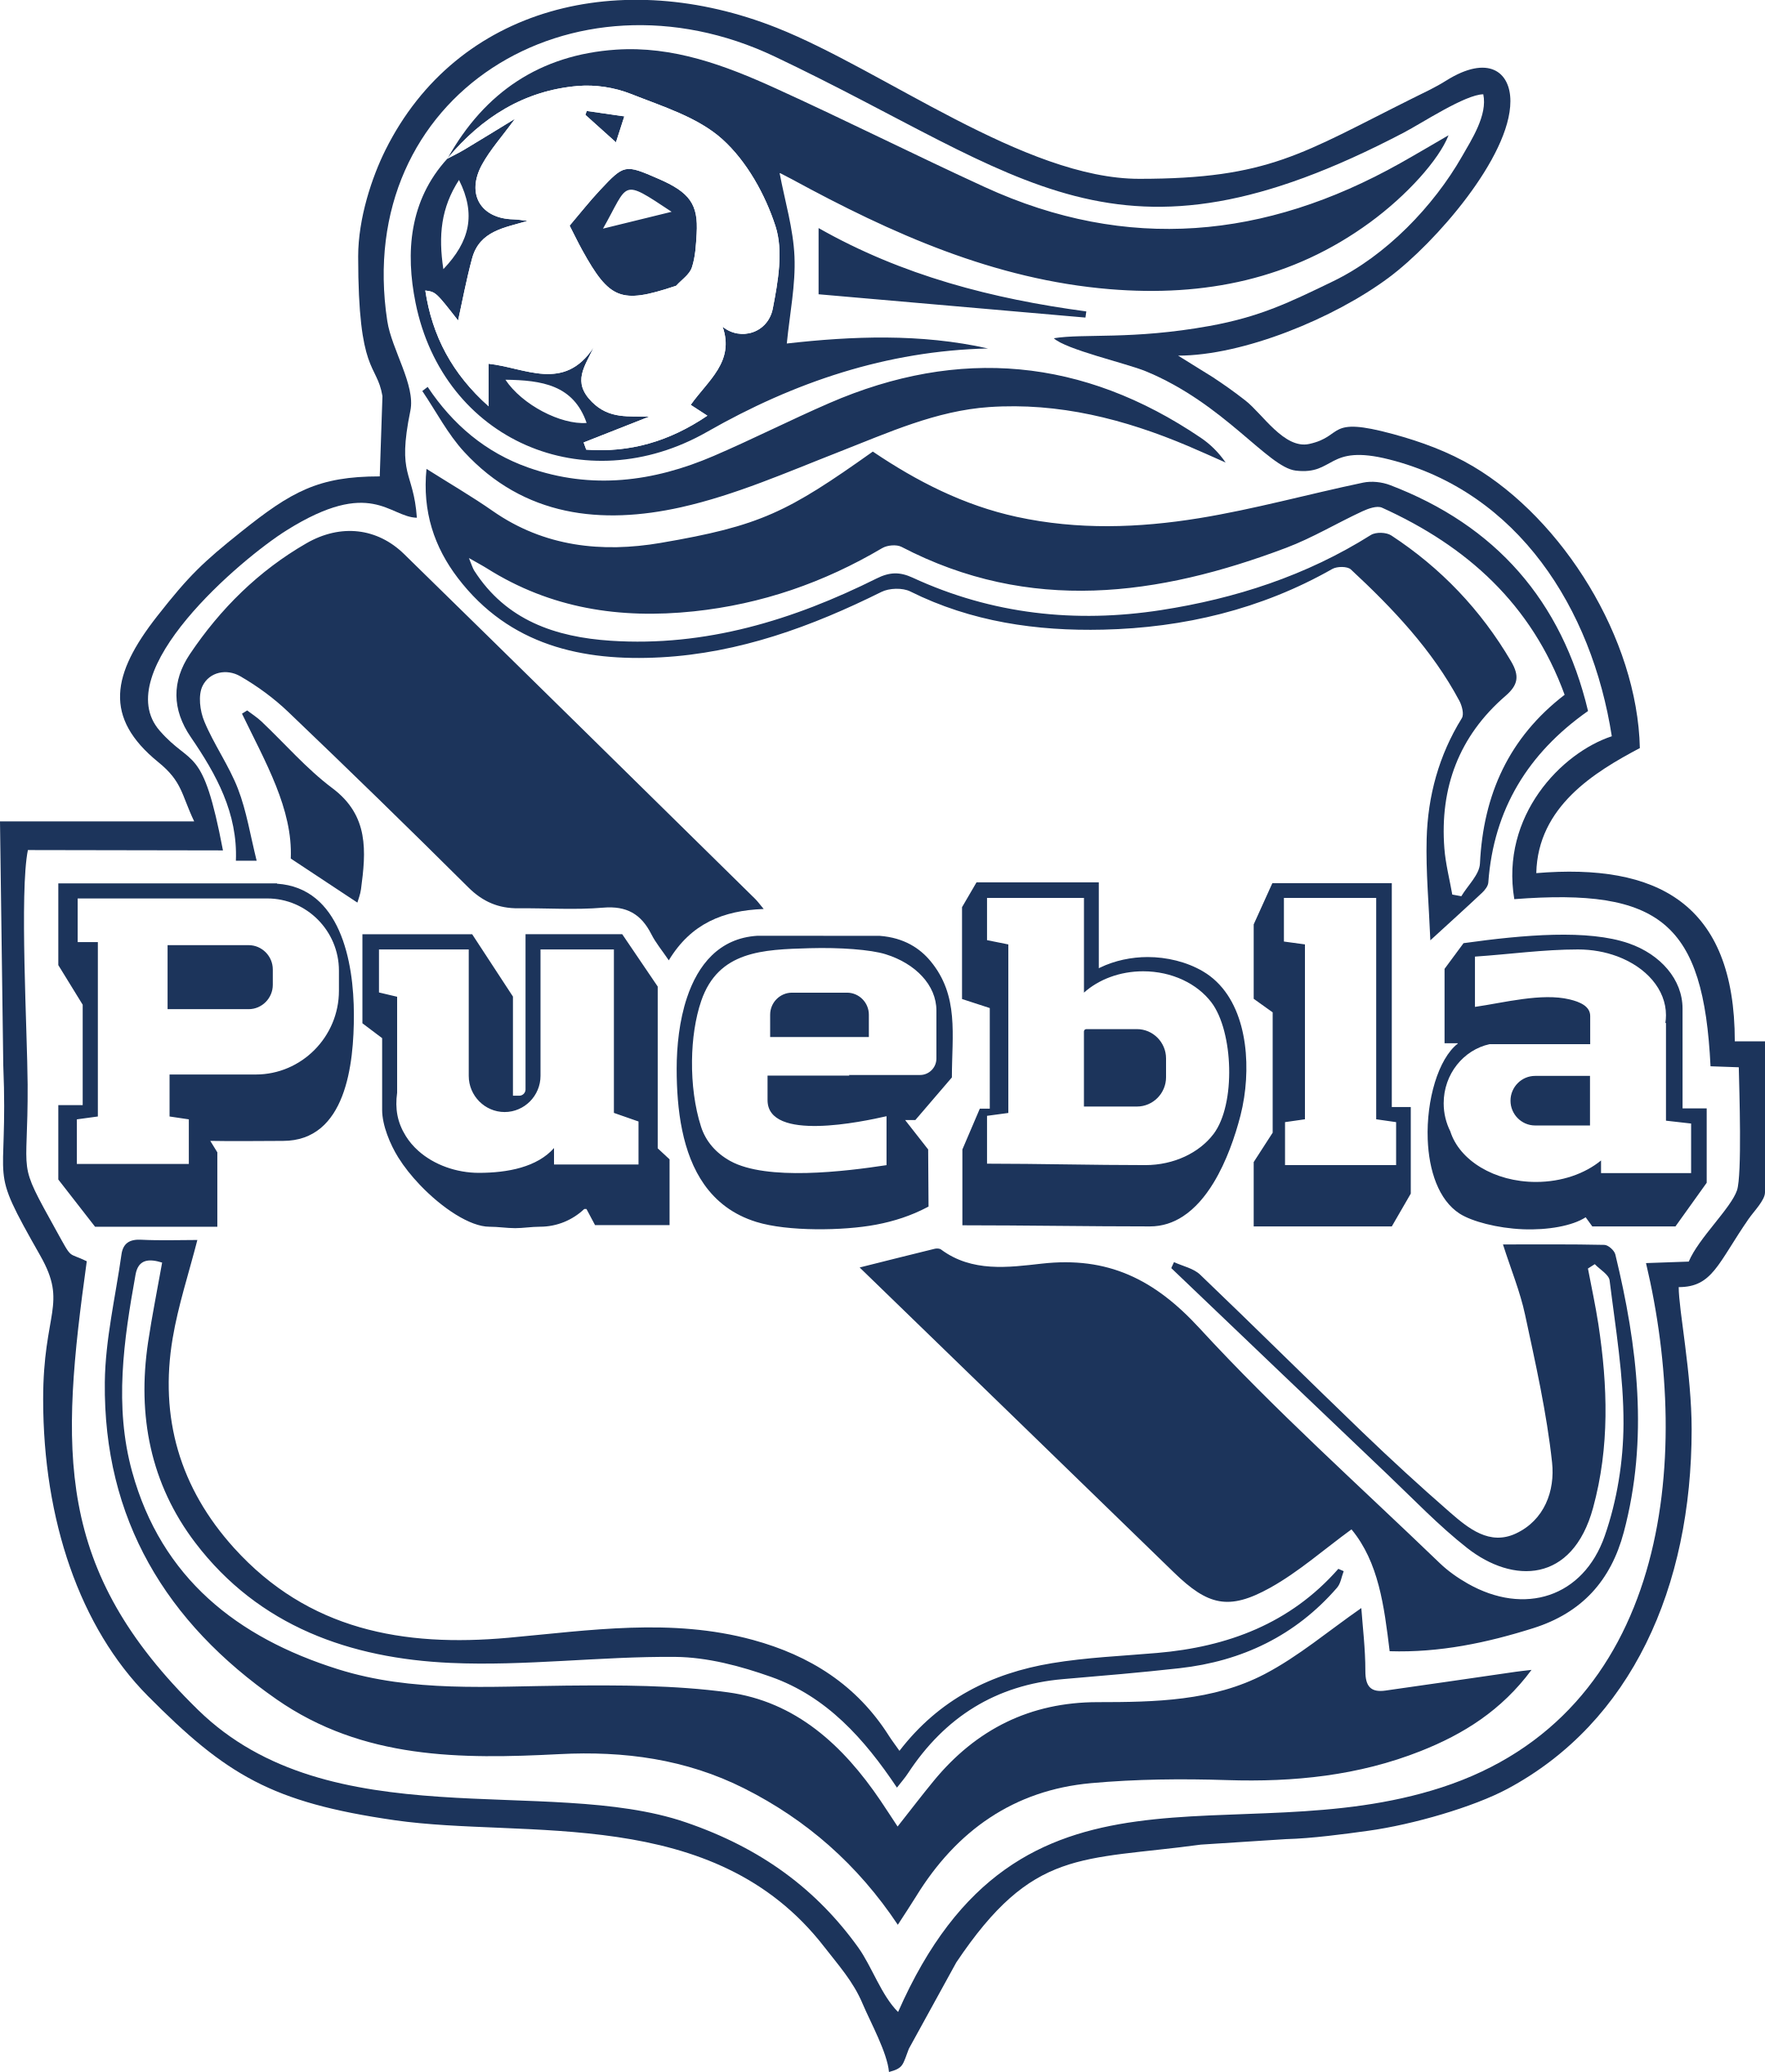 club puebla logo 1 - Club Puebla Logo